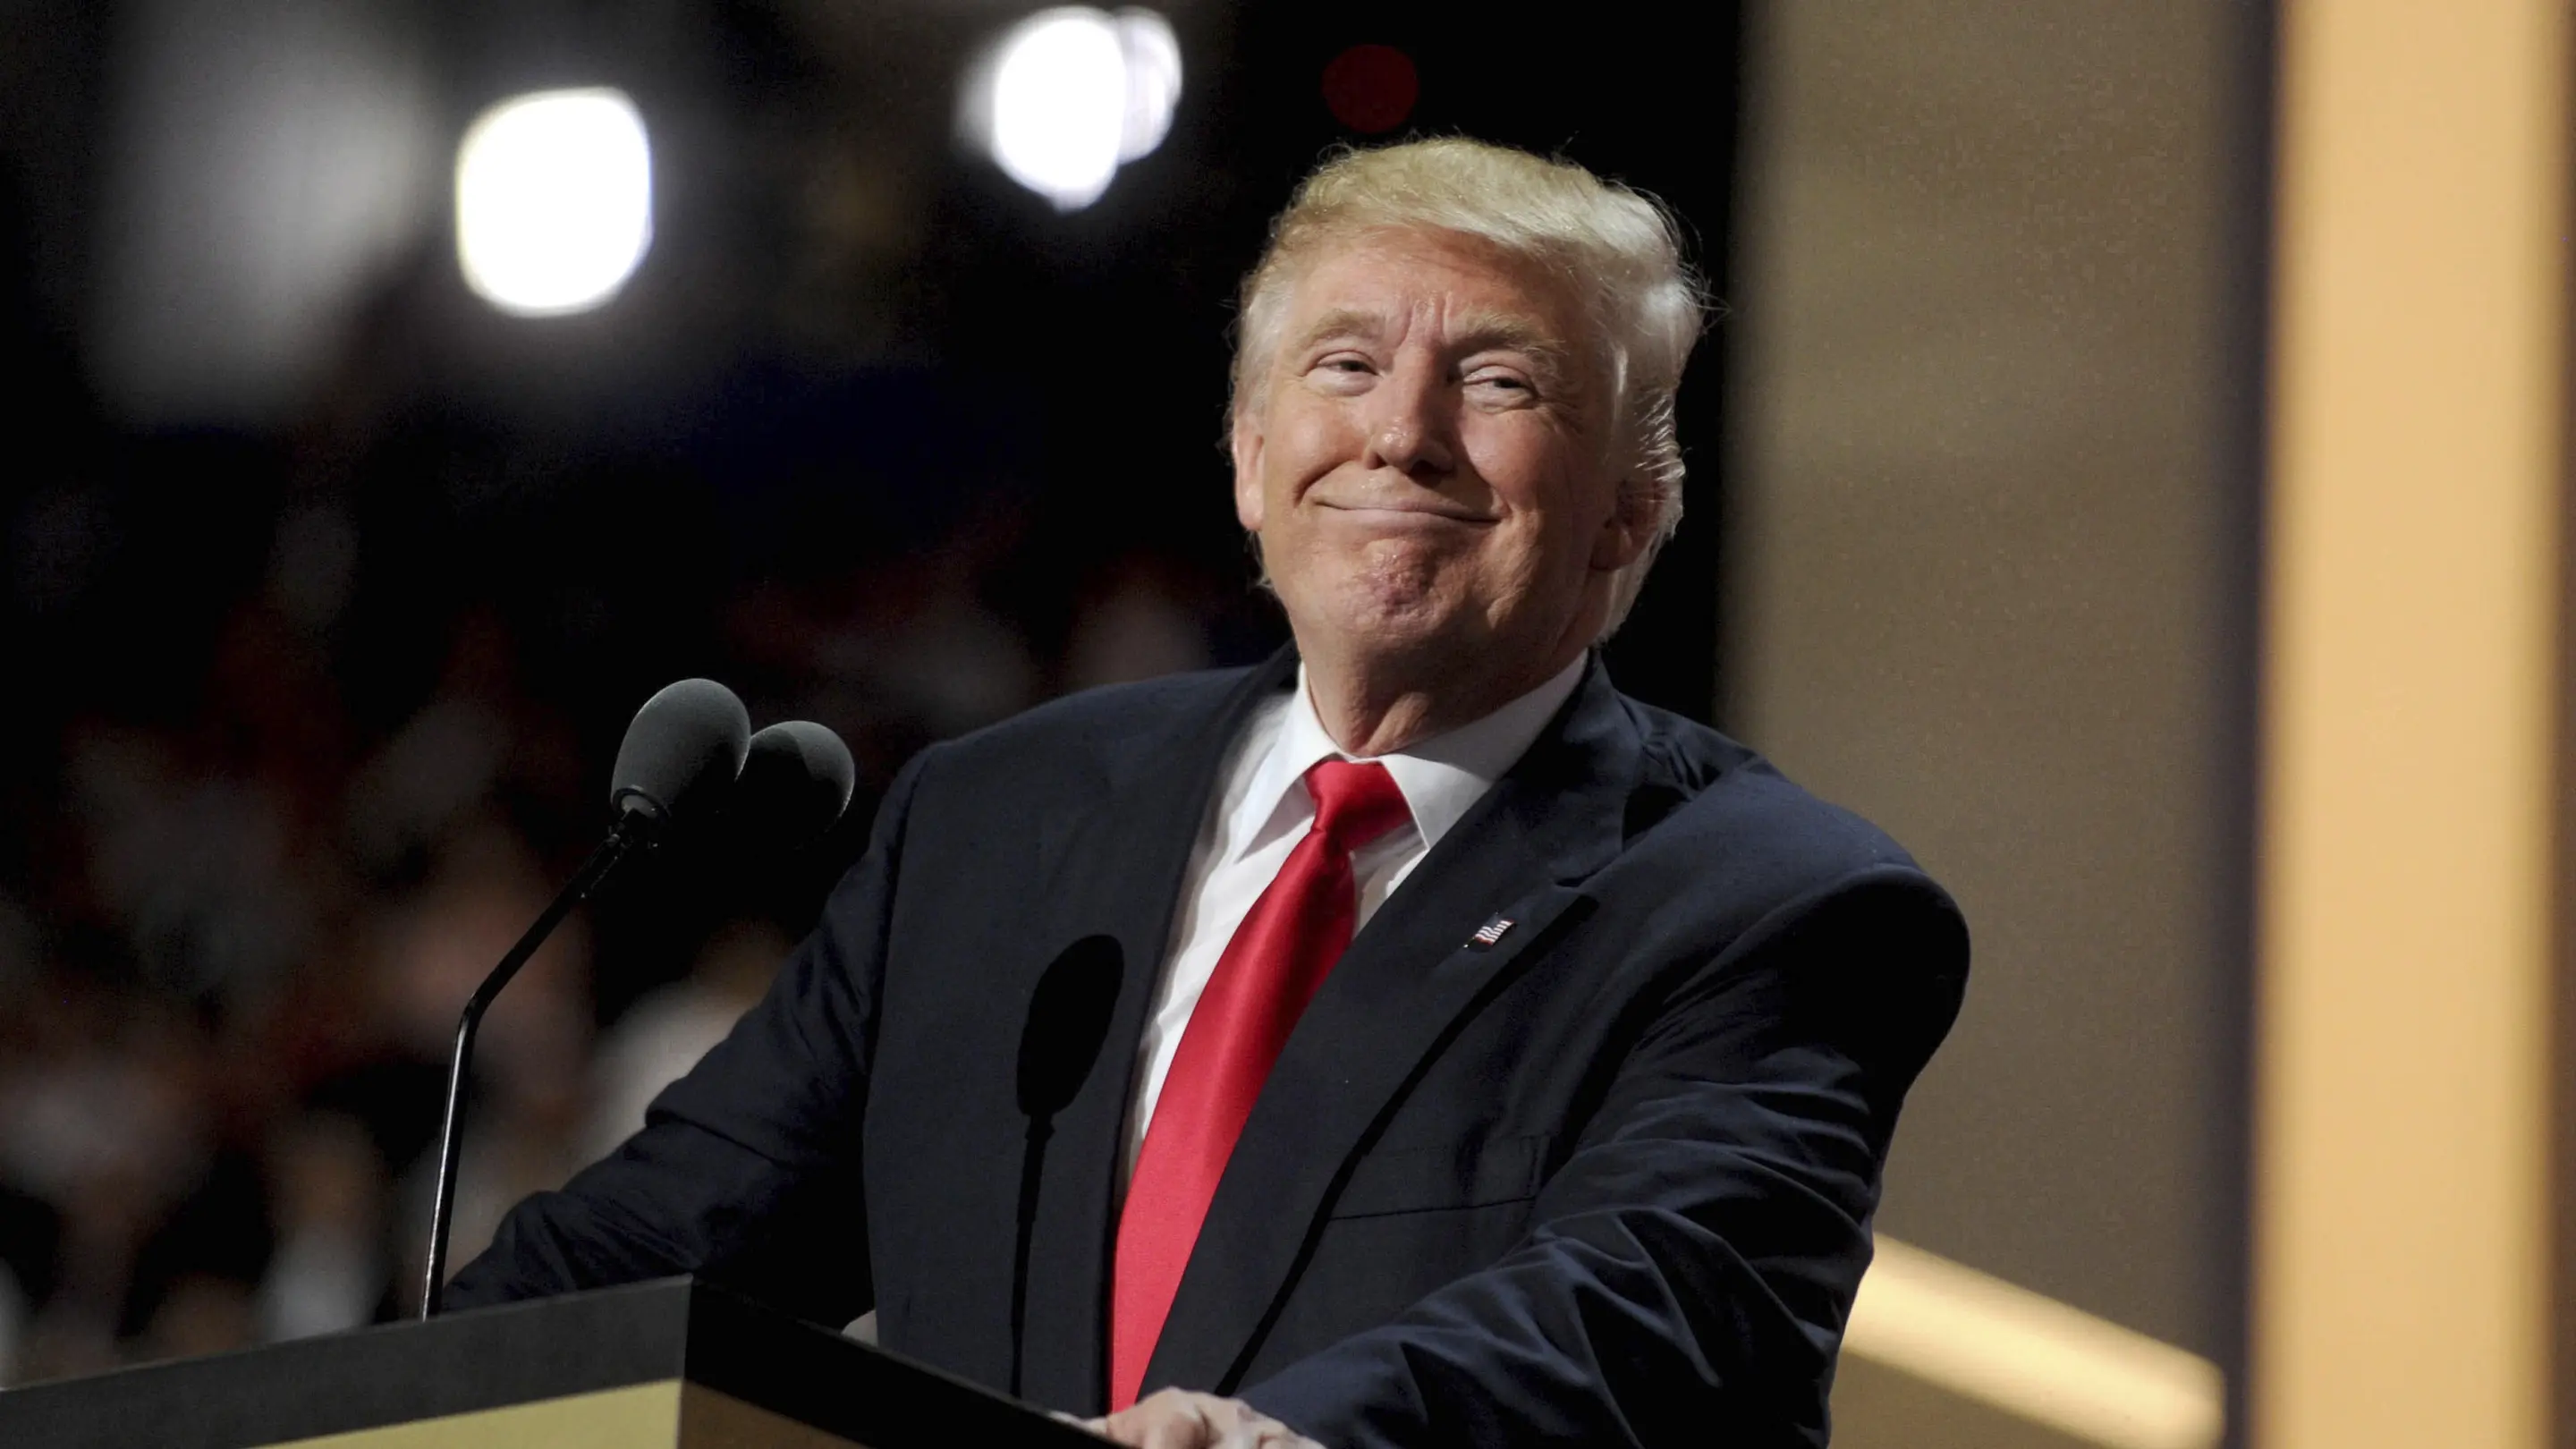 Donald Trump steht grinsend an einem Rednerpult